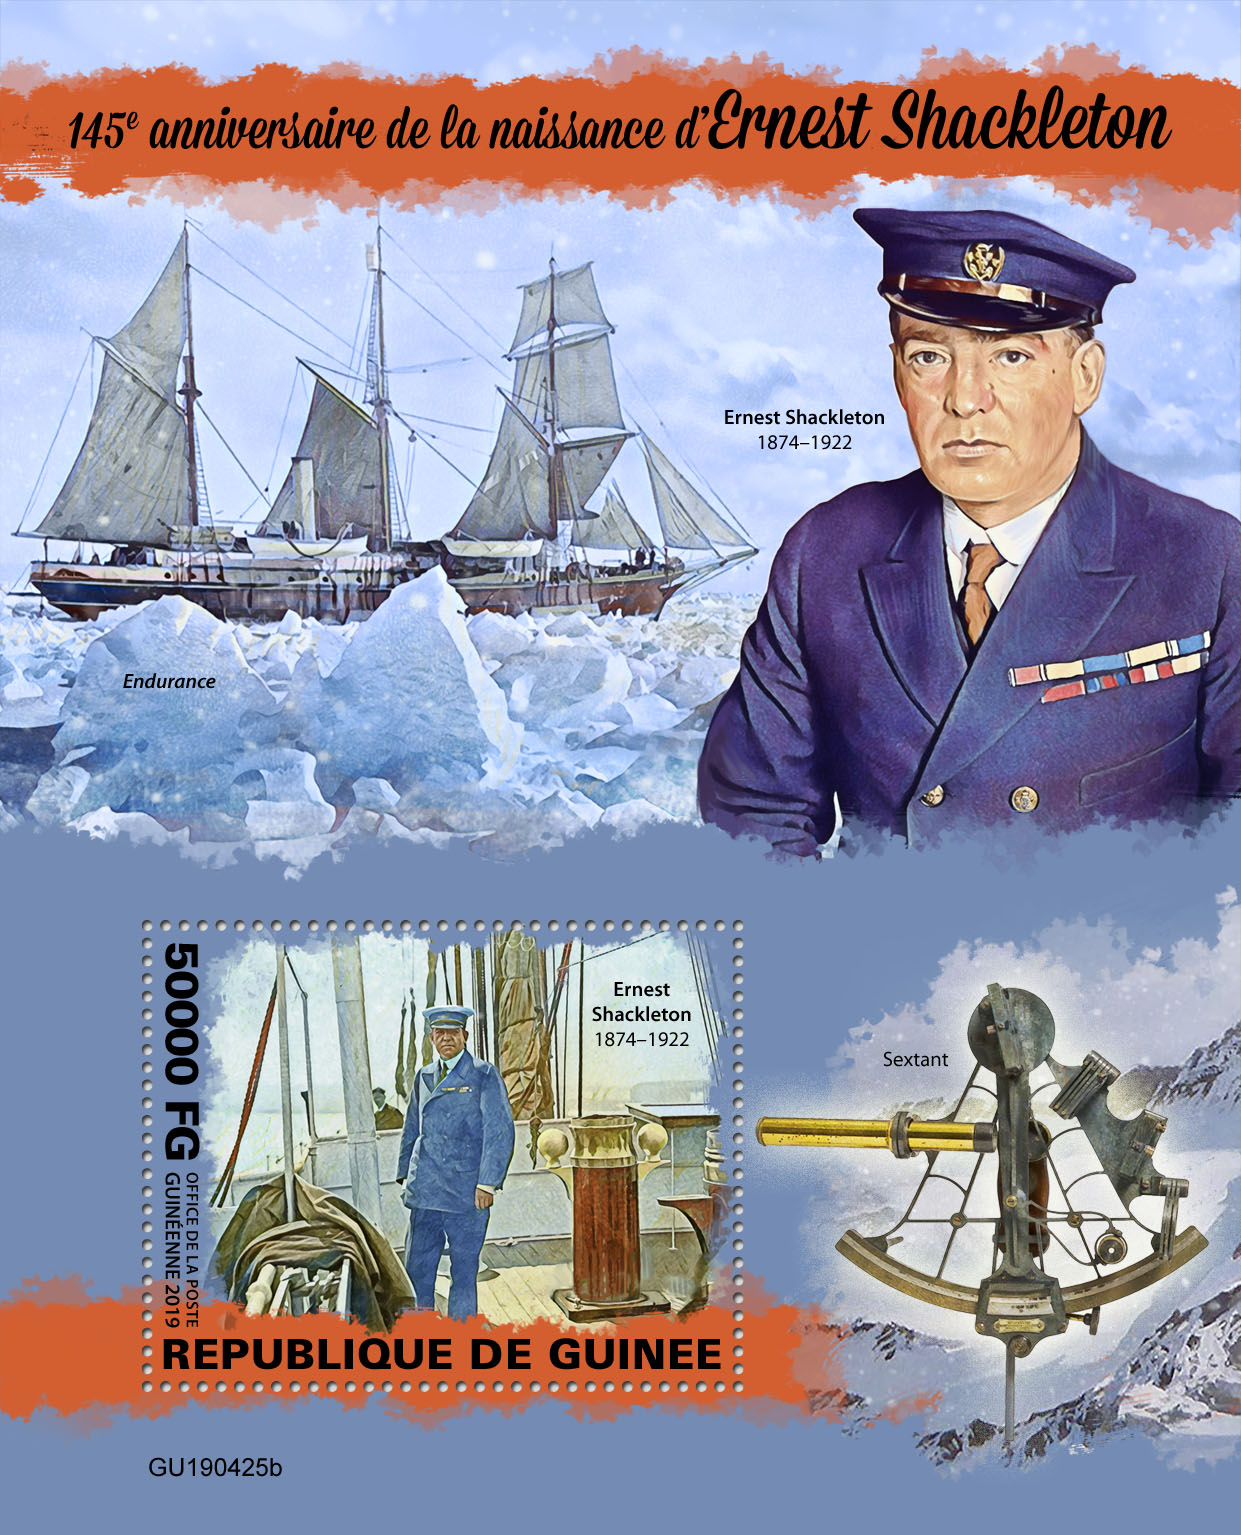 Ernest Shackleton - Issue of Guinée postage stamps